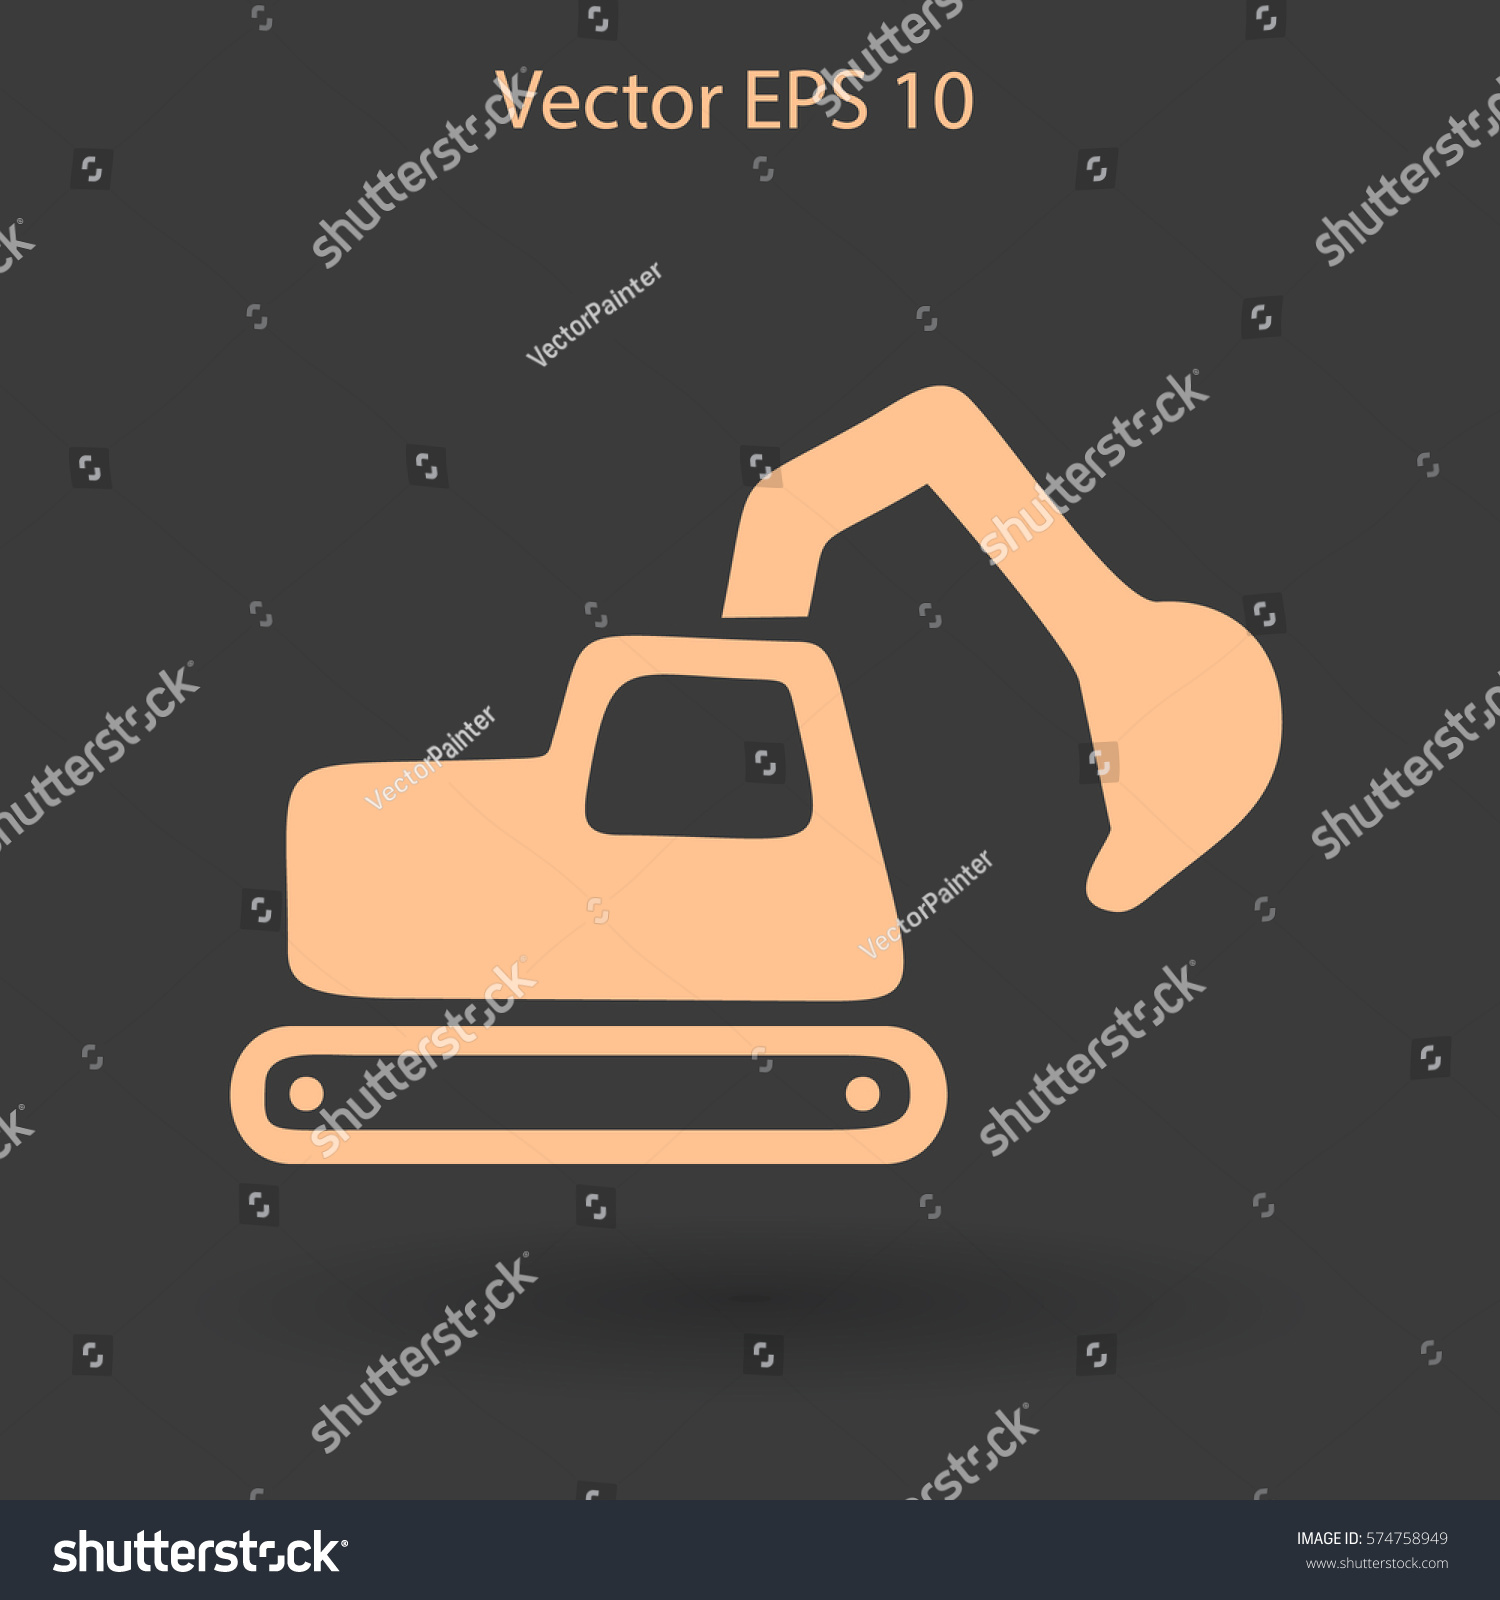 Edit Vectors Free Online - Flat excavator | Shutterstock Editor